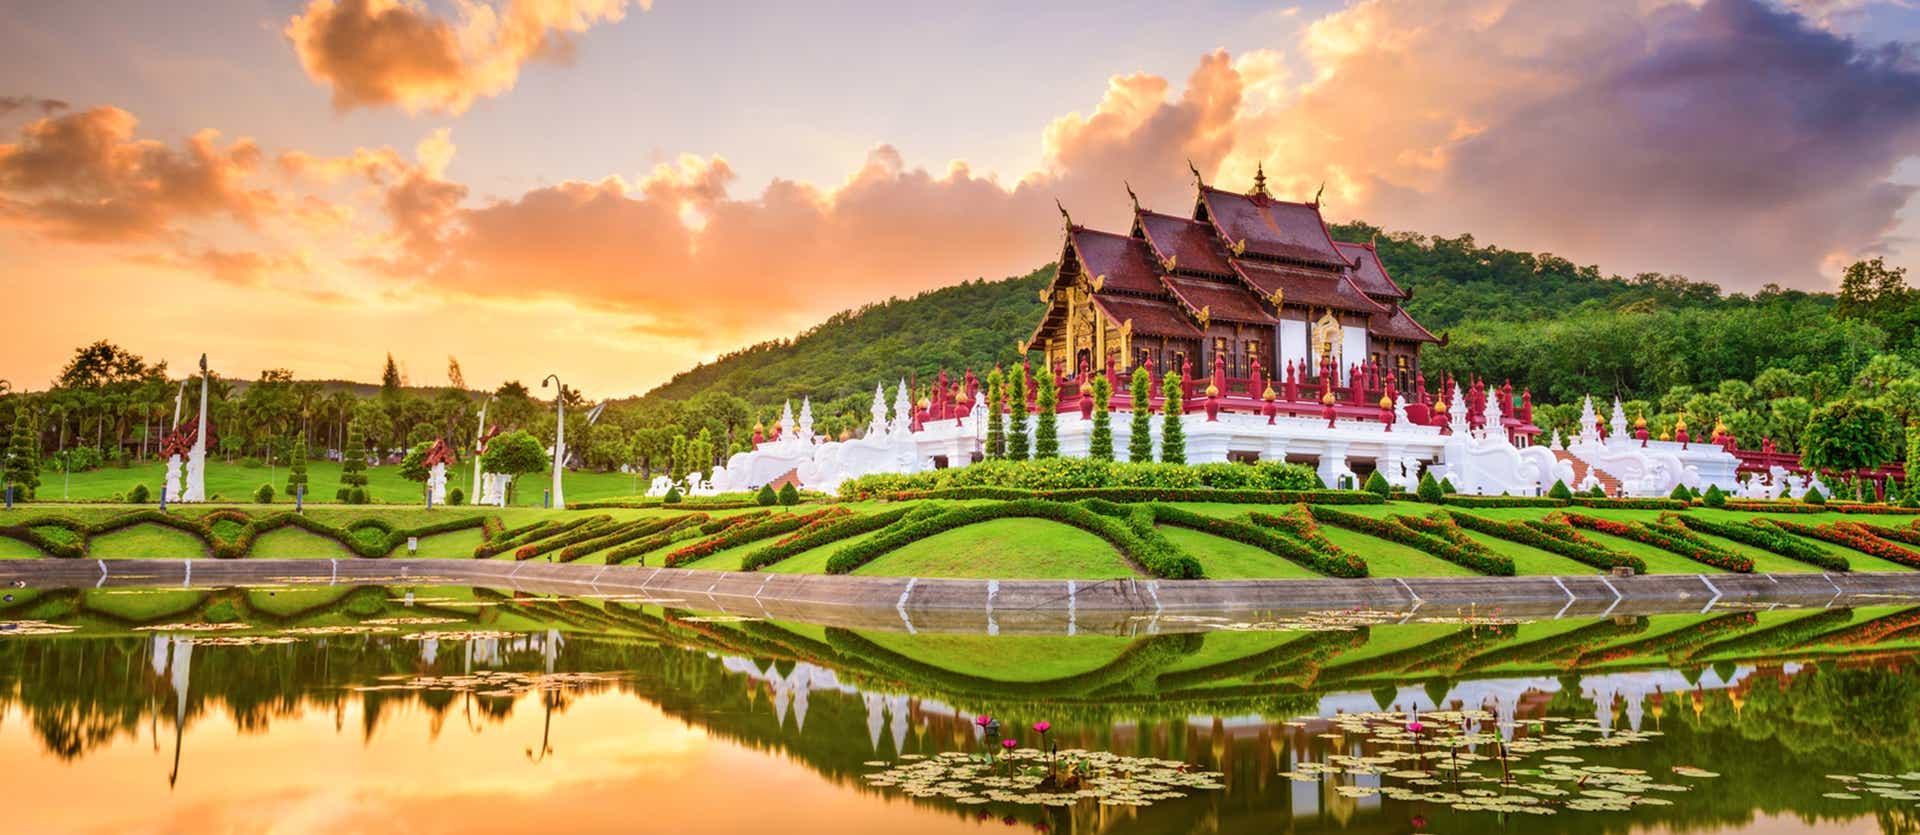 Royal Flora Park <span class="iconos separador"></span> Chiang Mai 